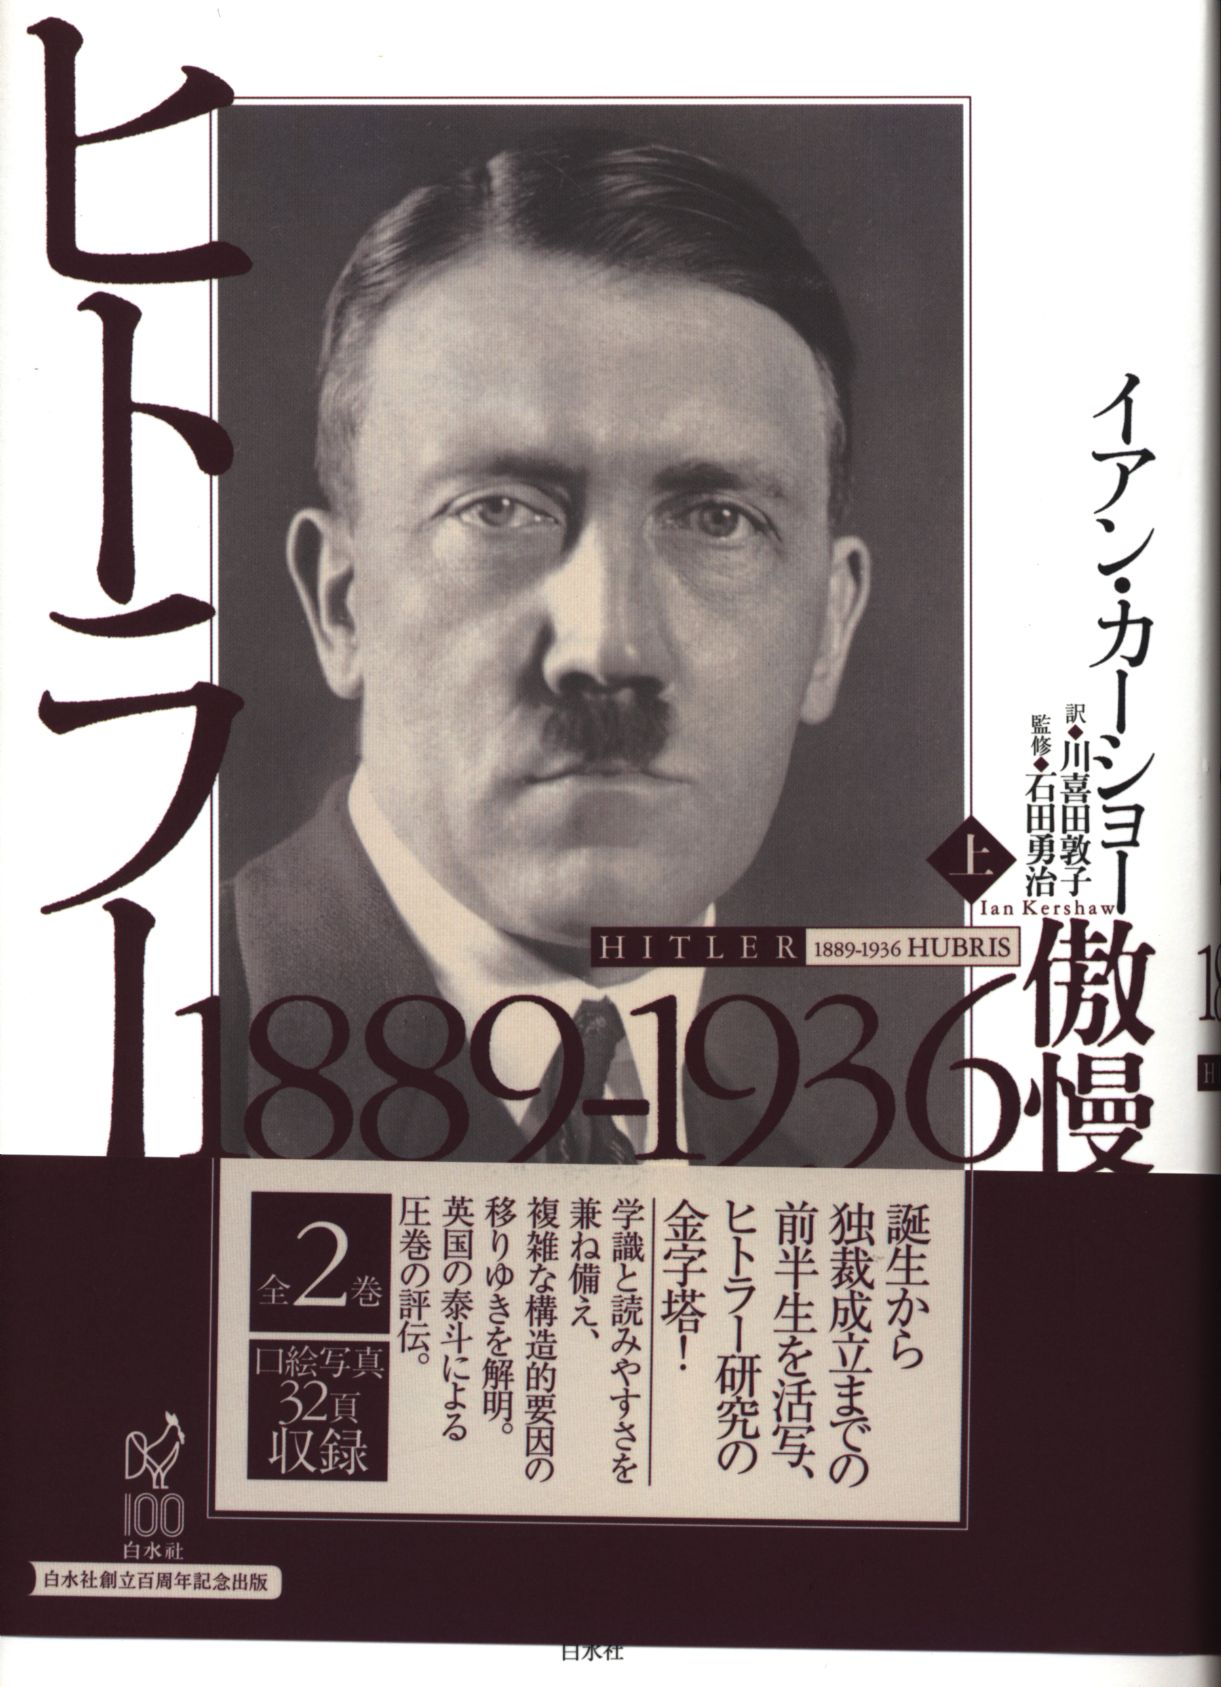 イアン・カーショー『ヒトラー』上巻 1889-1936 傲慢 www